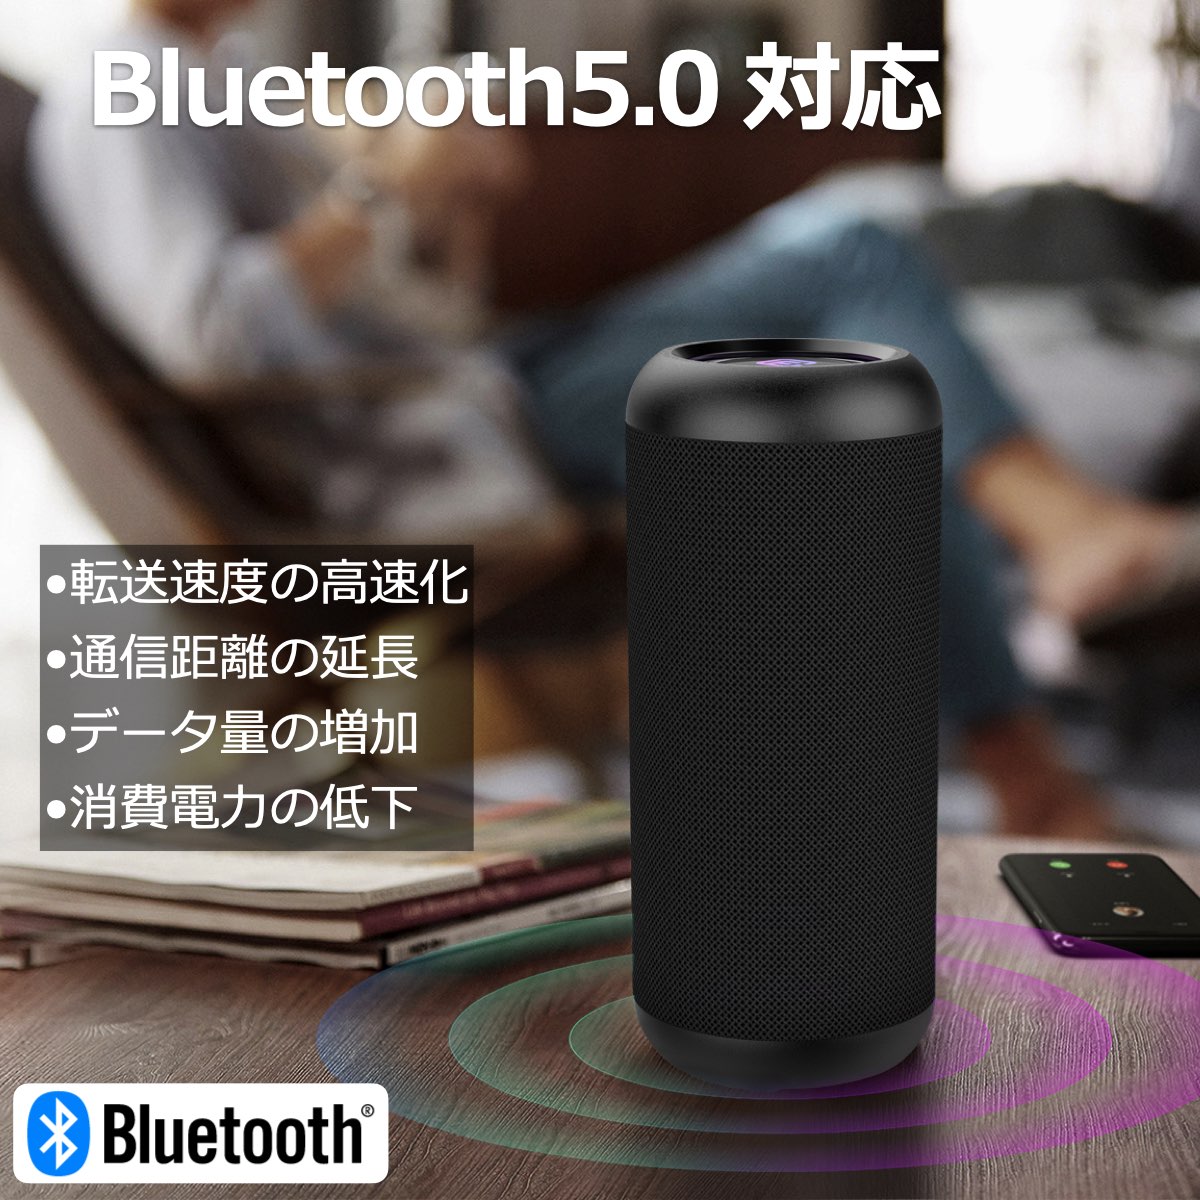 【2台セット】高音質 Bluetoothスピーカー CW1L